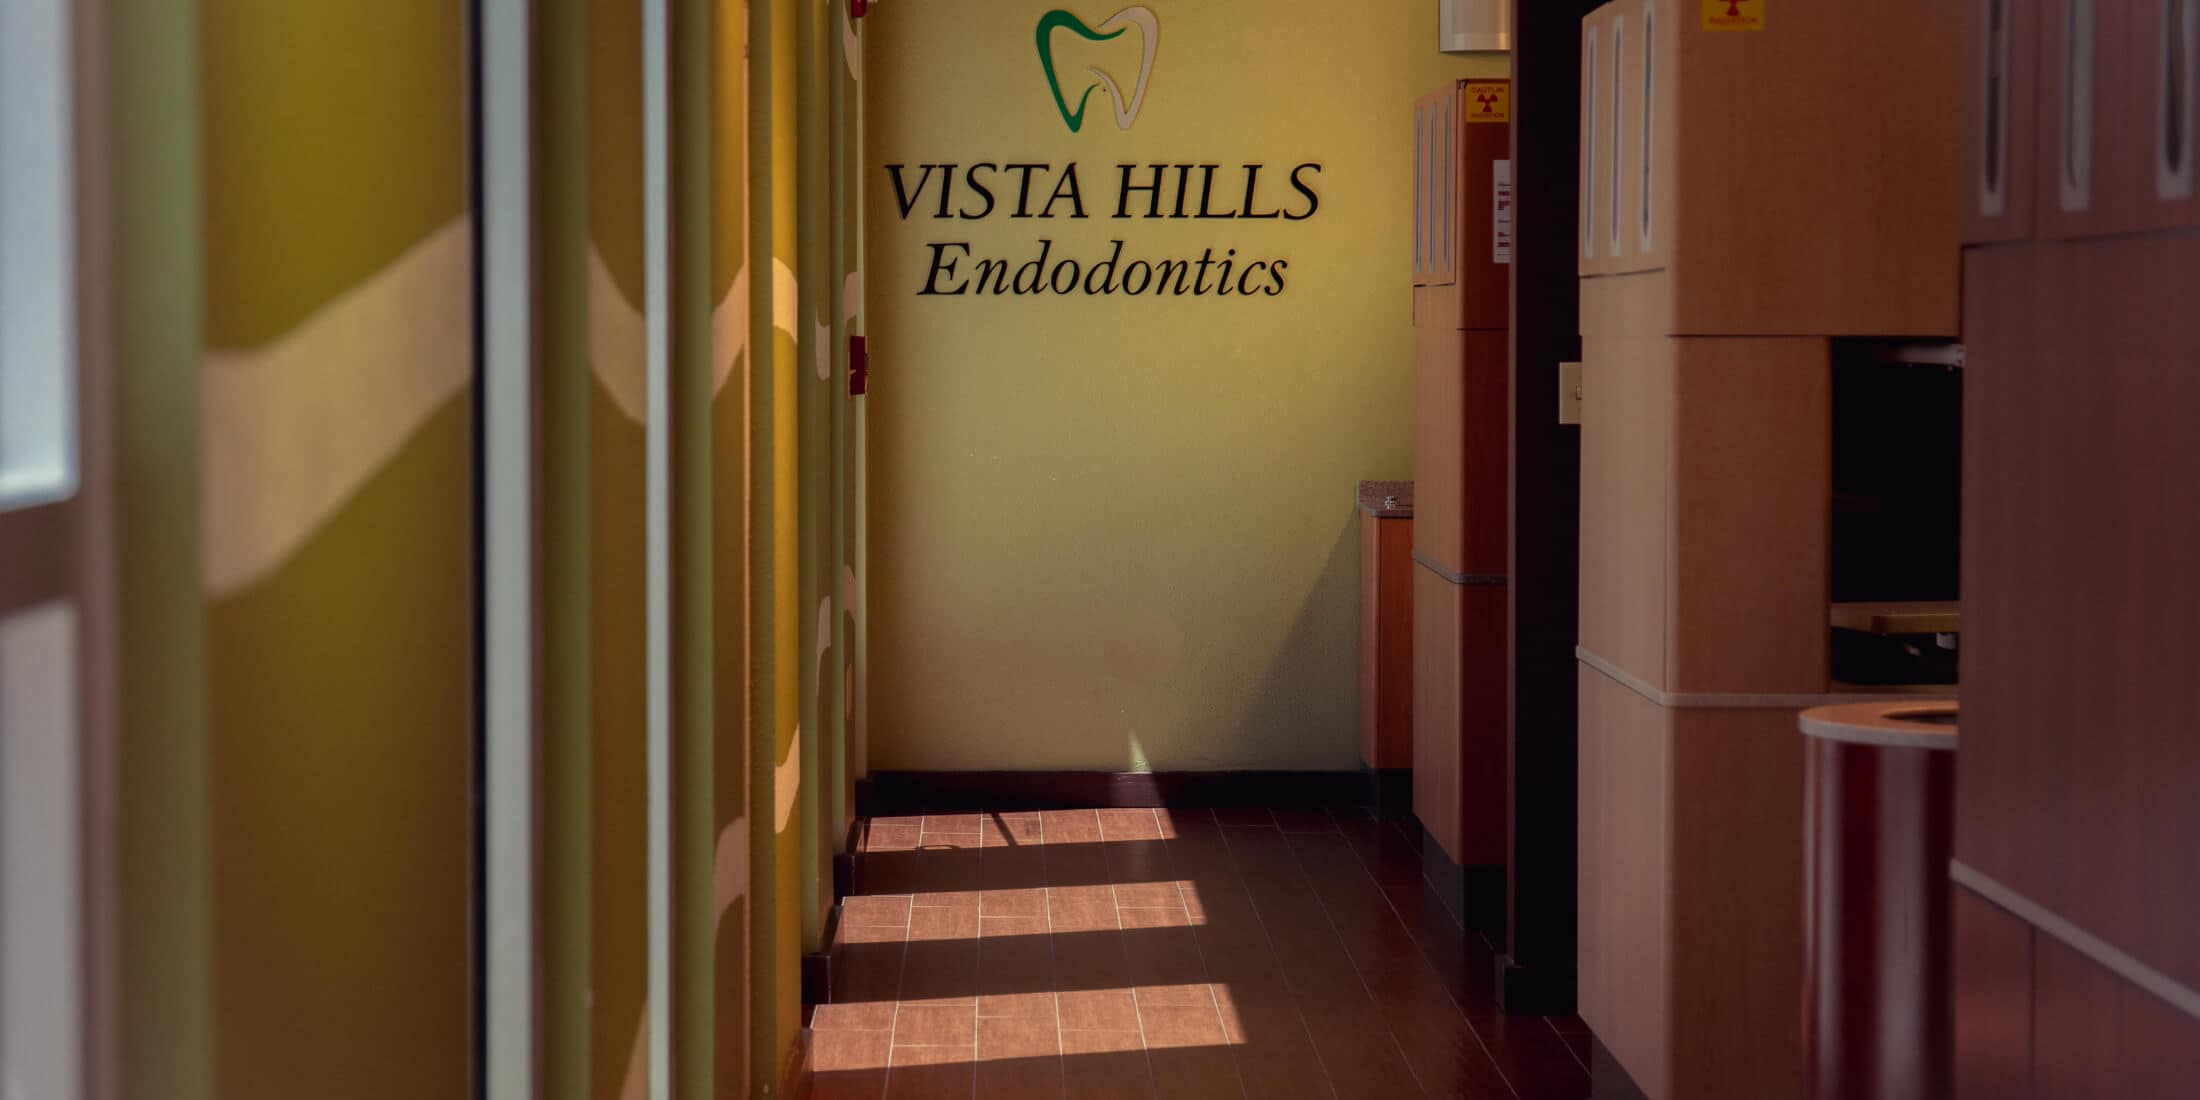 Vista Hills Family Dental interior